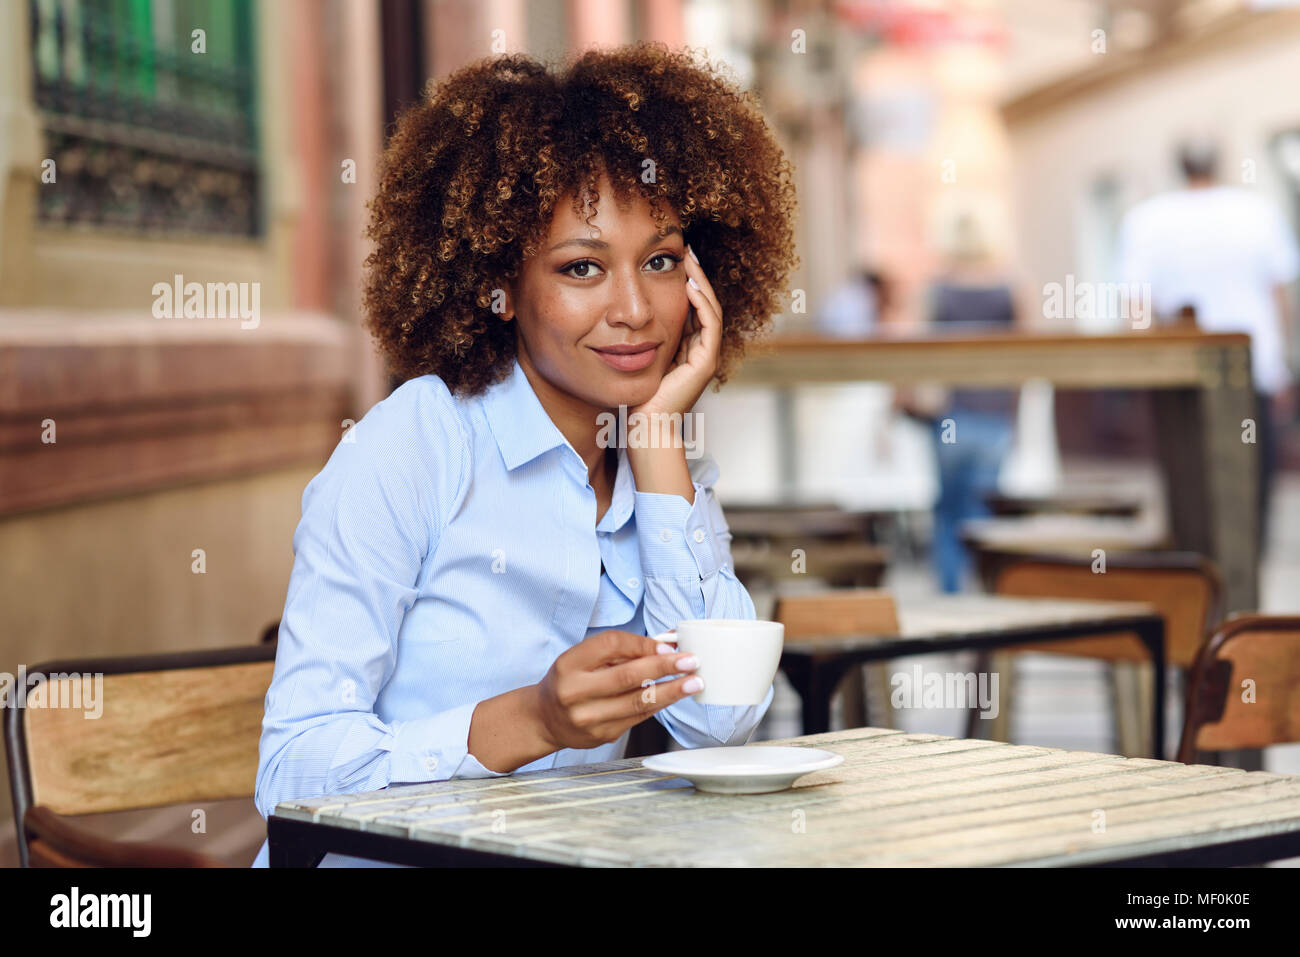 Spanien, Andalusien, Malaga. Schwarze Frau, afro Frisur, in einem Café sitzen. Mädchen mit formalwear eine Pause. Lifestyle Konzept. Stockfoto